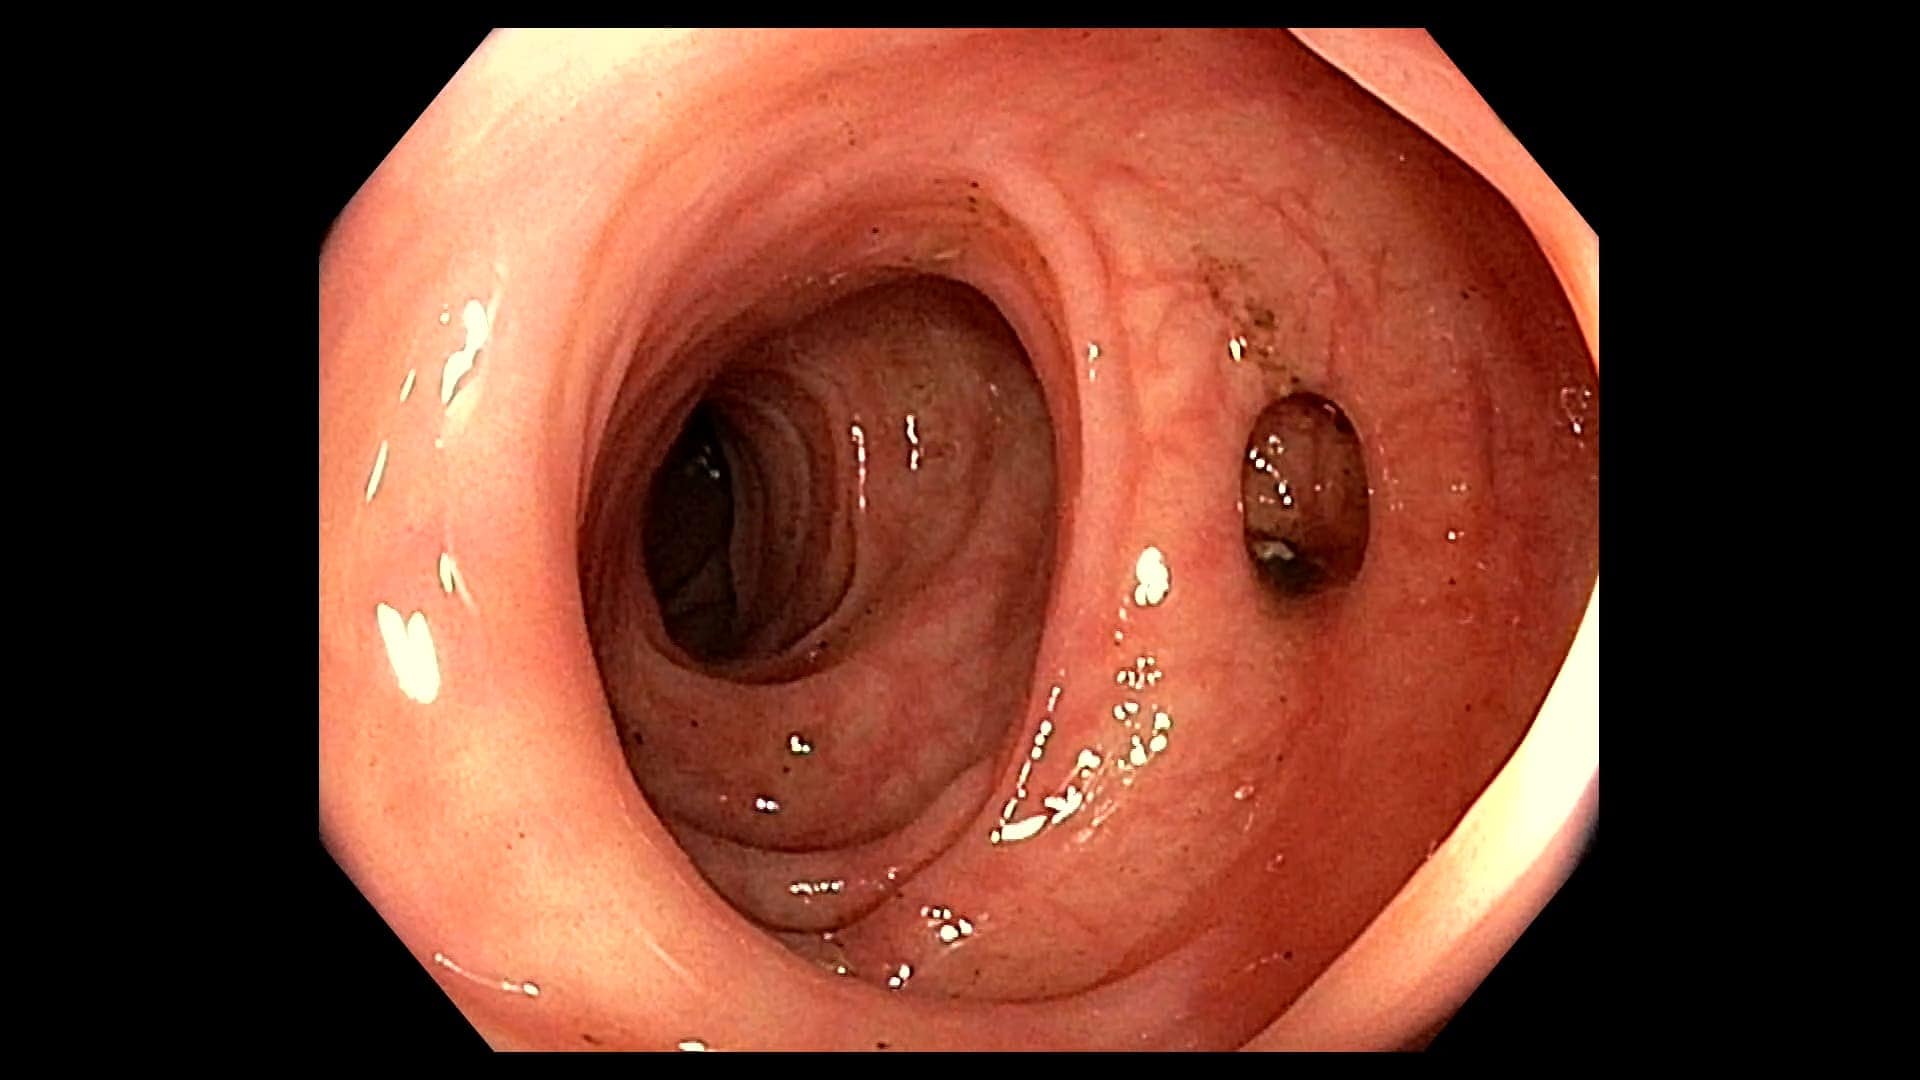 Divertículos de colon: causas y complicaciones